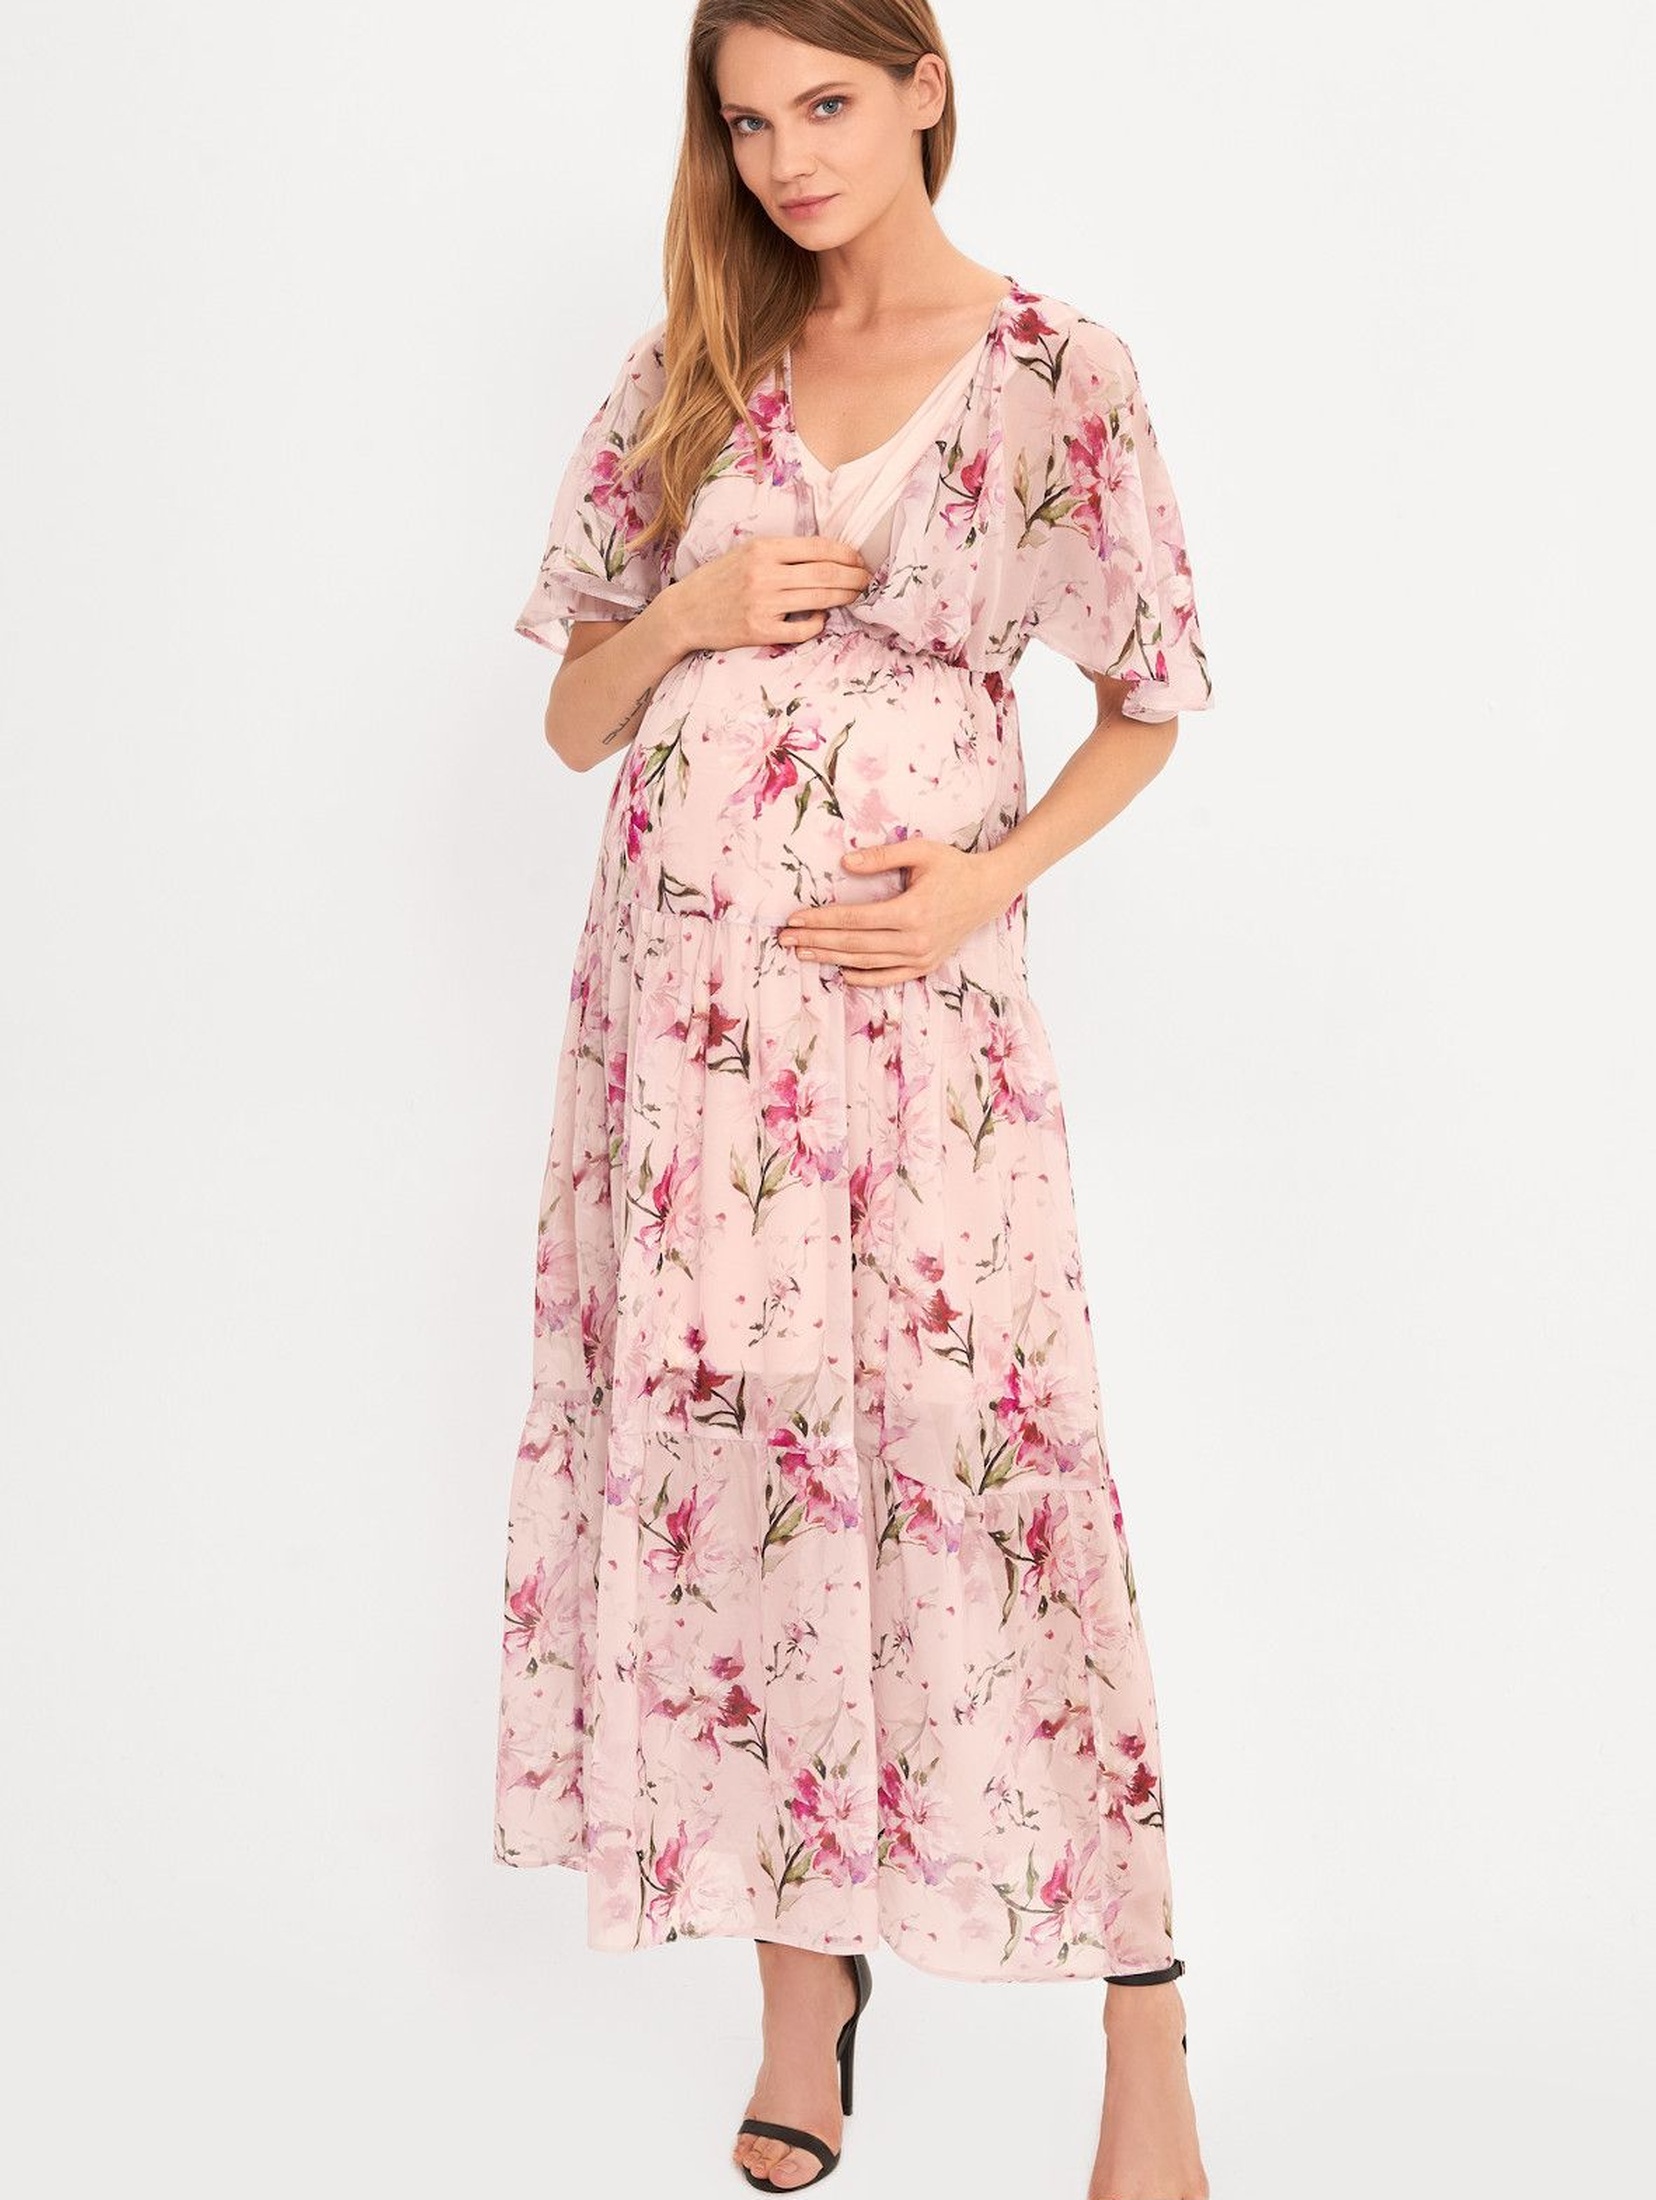 Sukienka ciążowa i dla karmiącej mamy Maxi- różowa w kwiaty